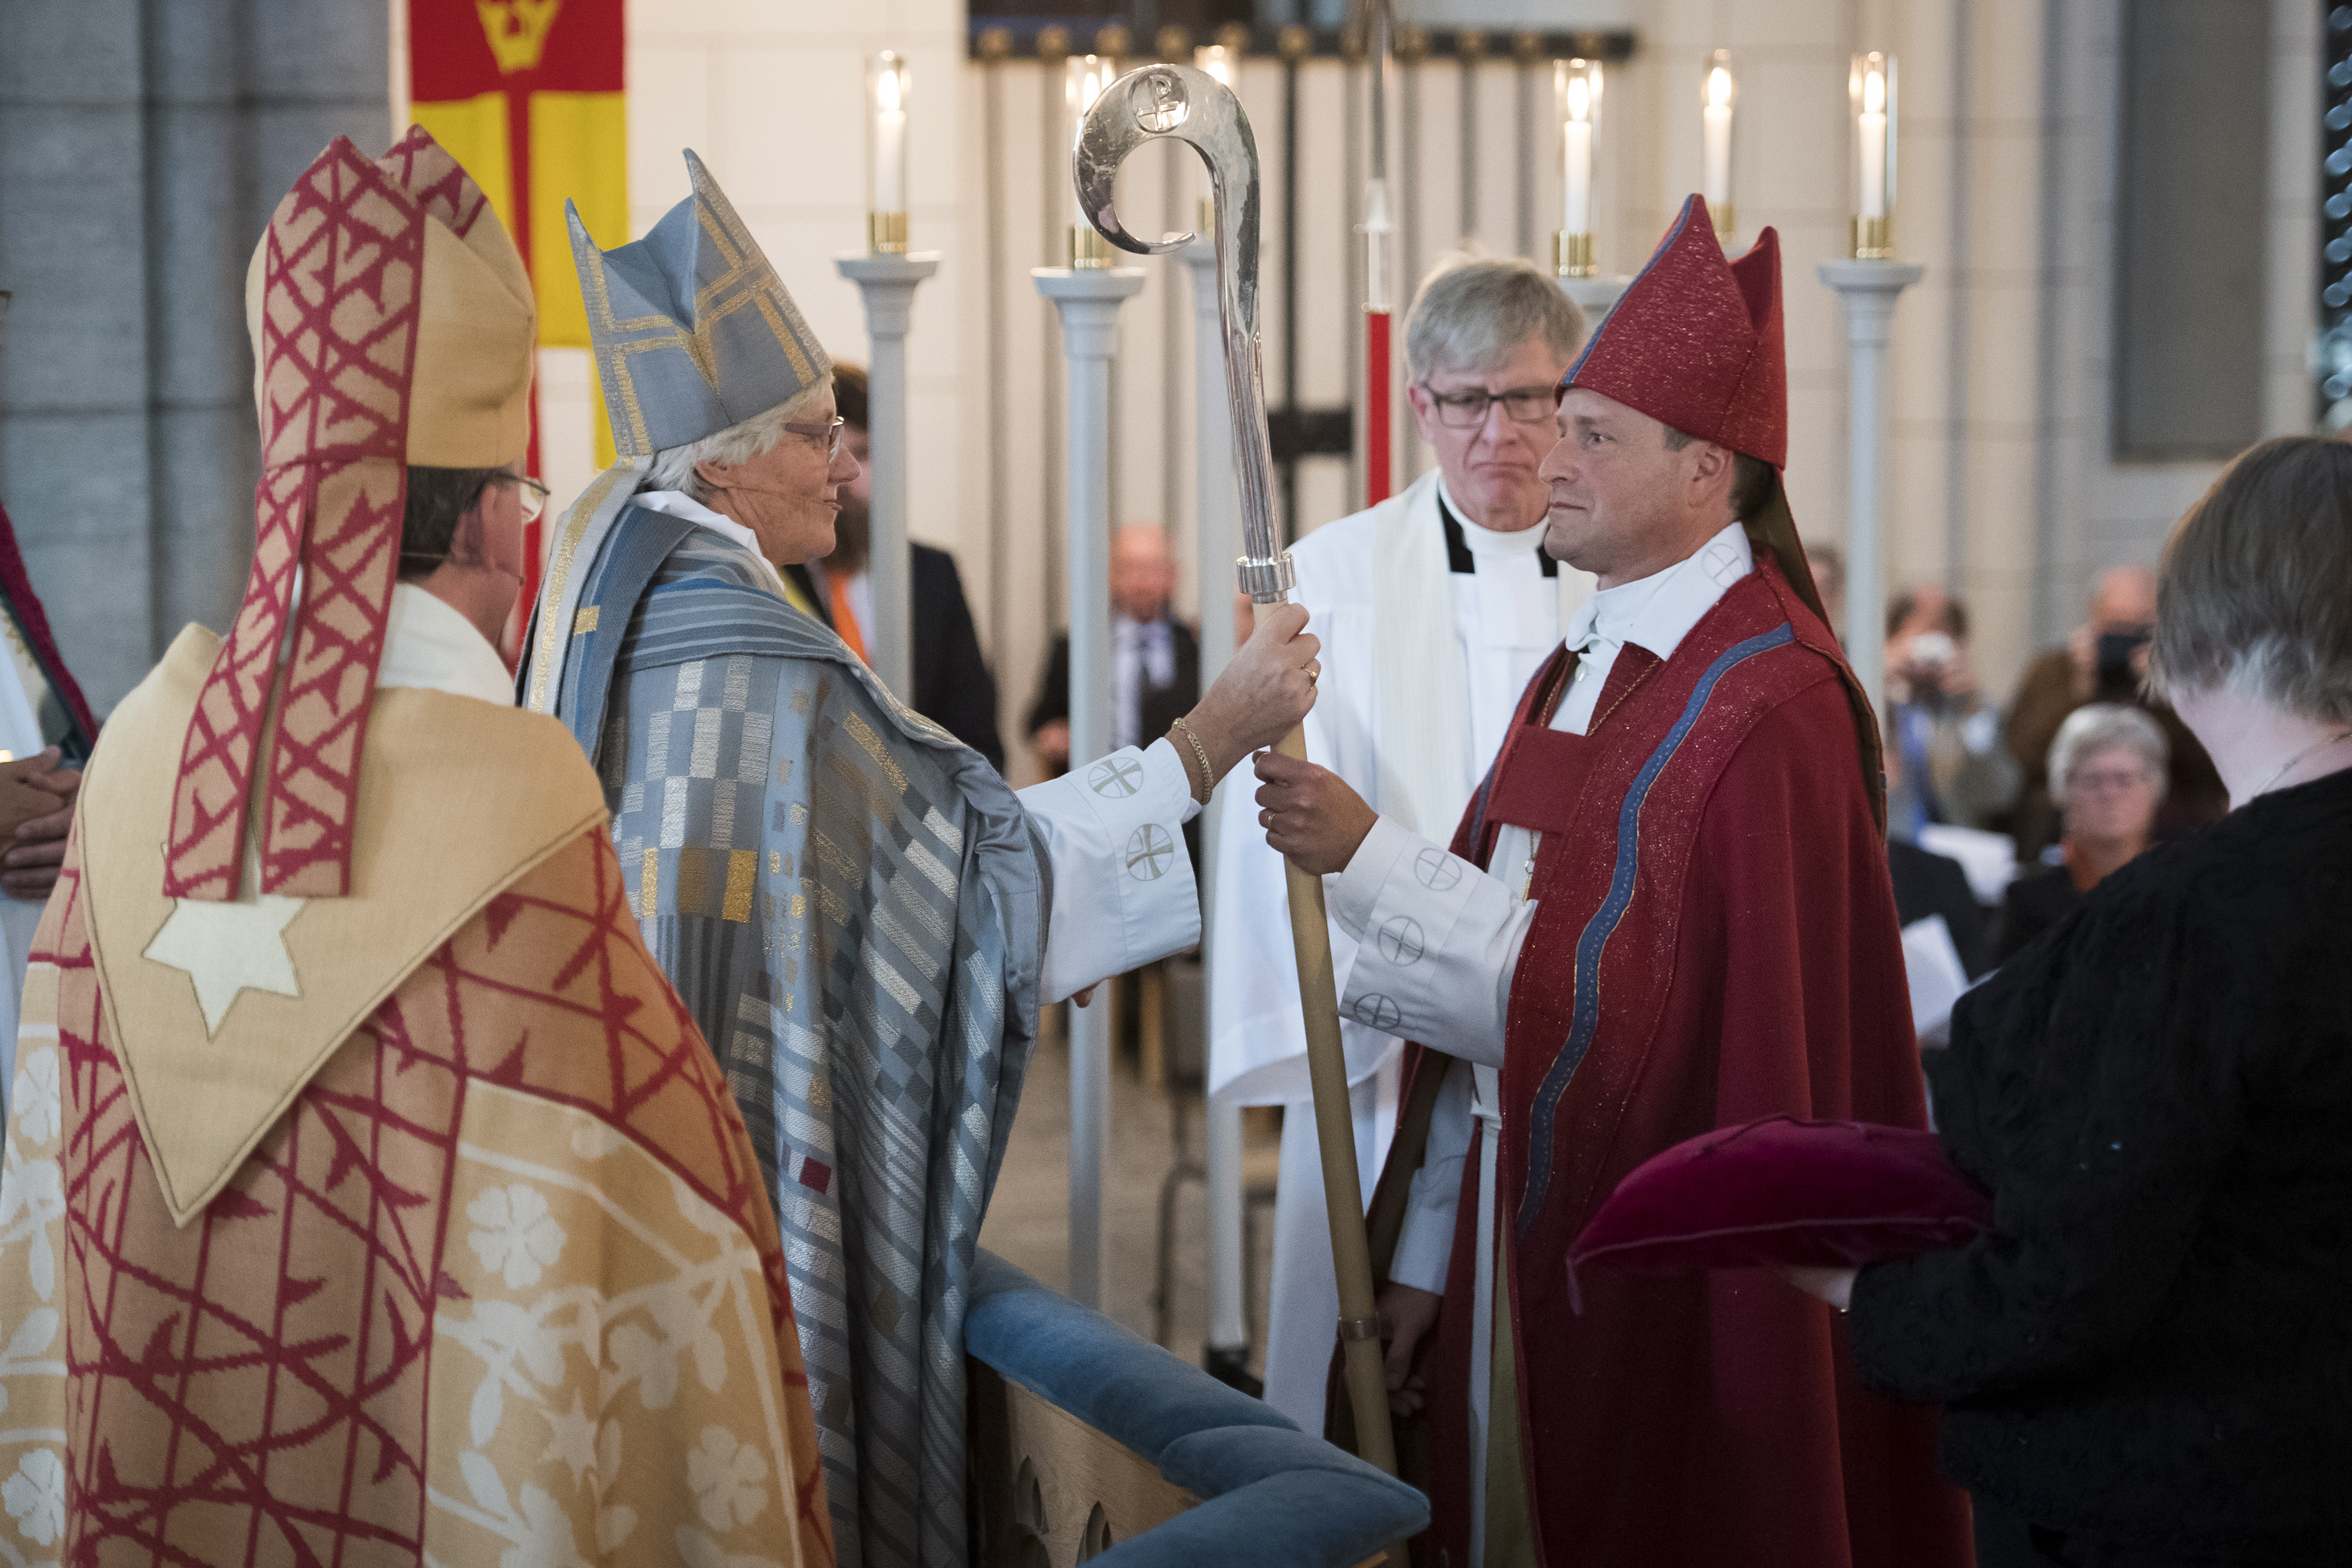 Ärkebiskop Antje Jackelén räcker över en biskopsstav till en biskop i röd kåpa.